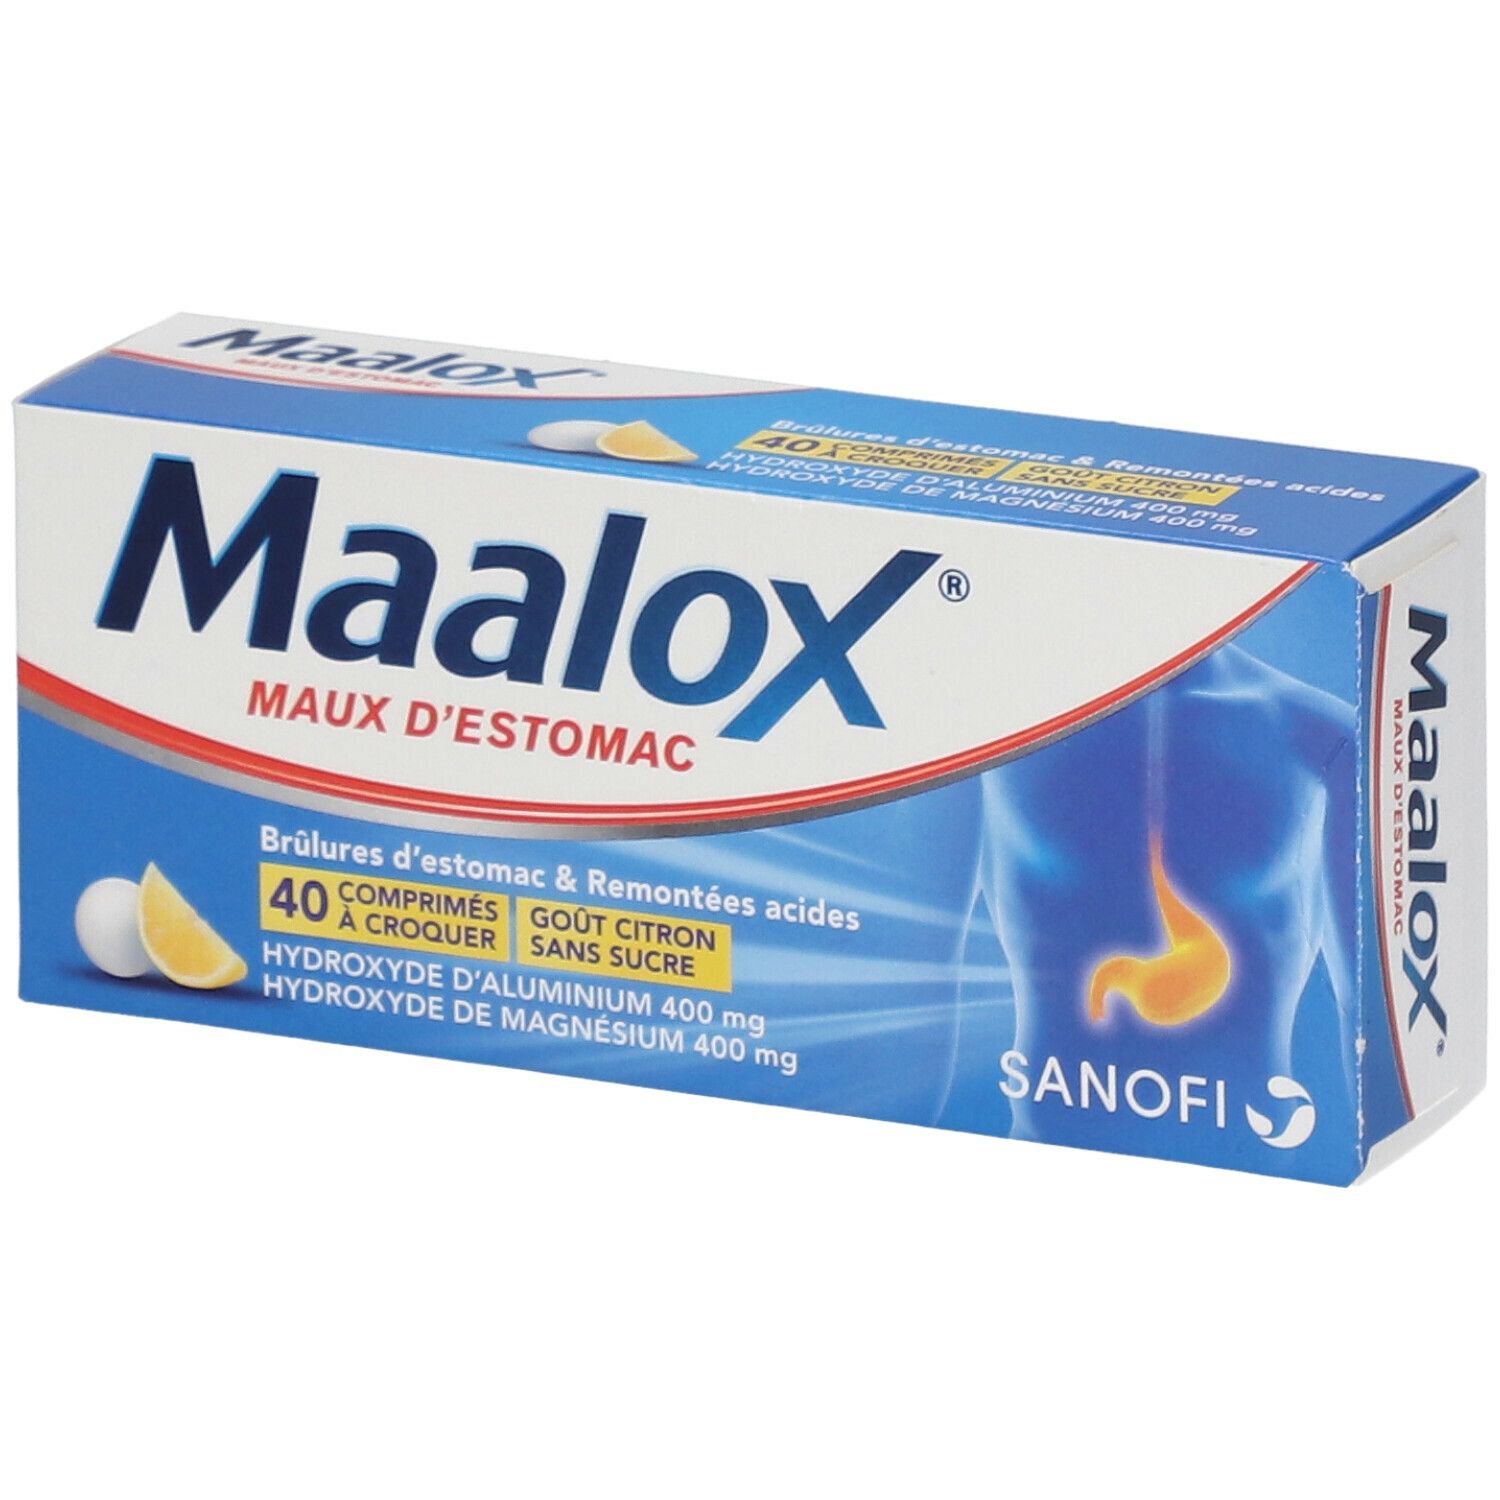 Maalox® Maux d'Estomac s/s